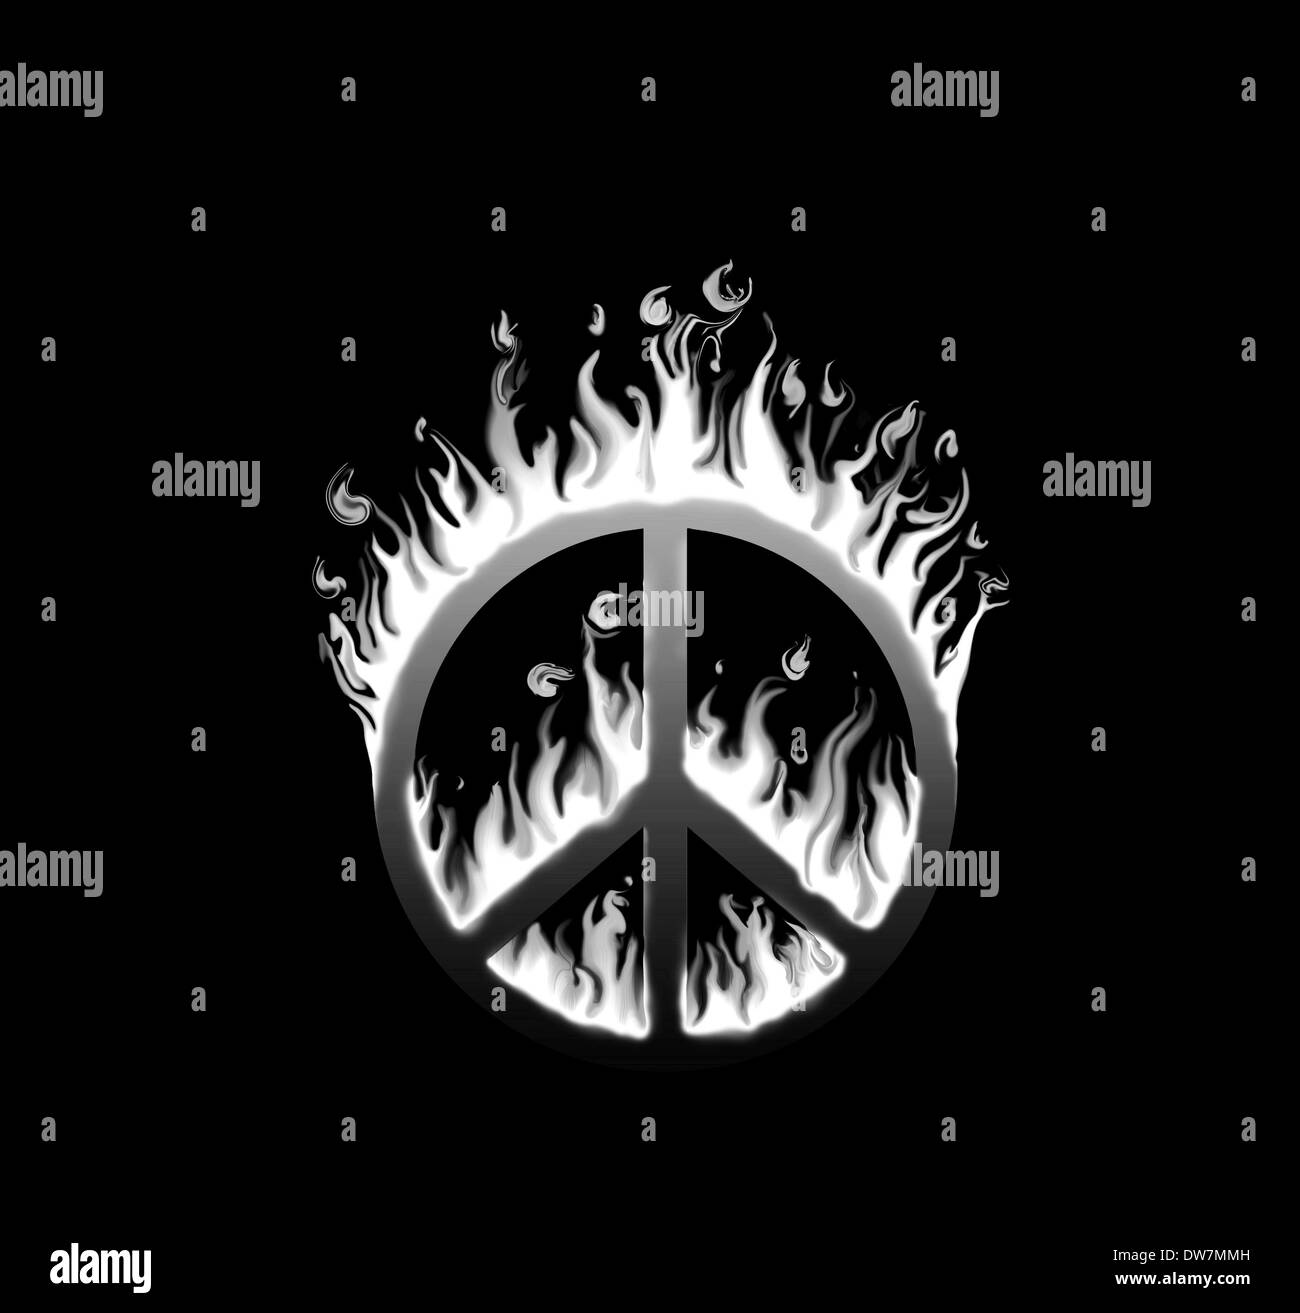 Símbolo de paz en llamas - Concepto de especies en peligro de la paz; en blanco y negro Foto de stock